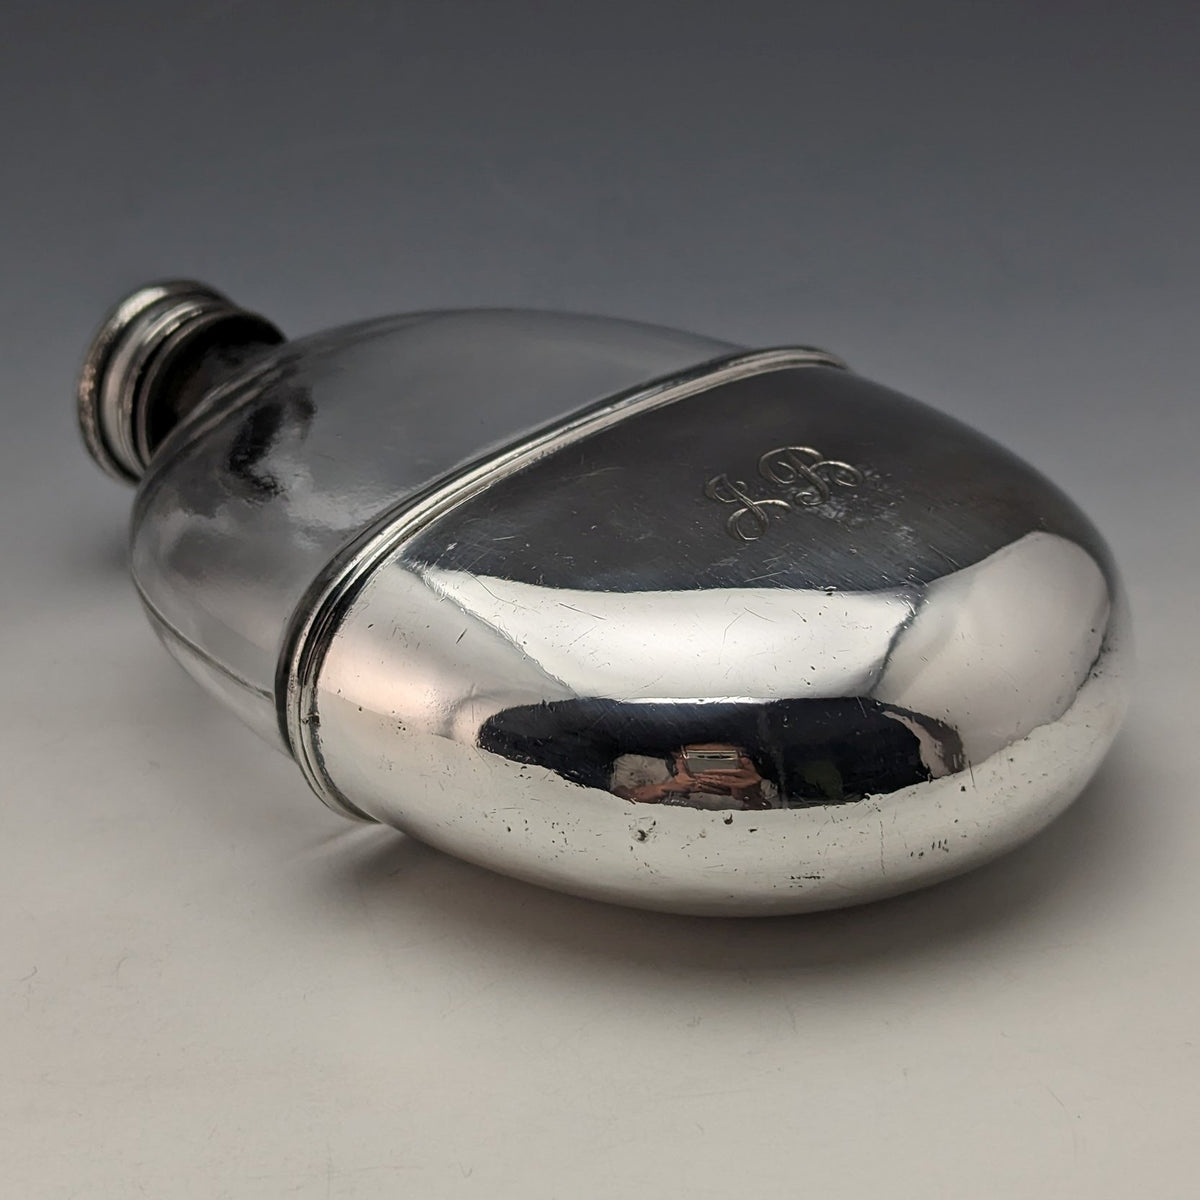 目立った傷や汚れのない美品機能1900年 英国アンティーク シルバープレート装飾 オーバル型ガラススキットル ヒップフラスコ